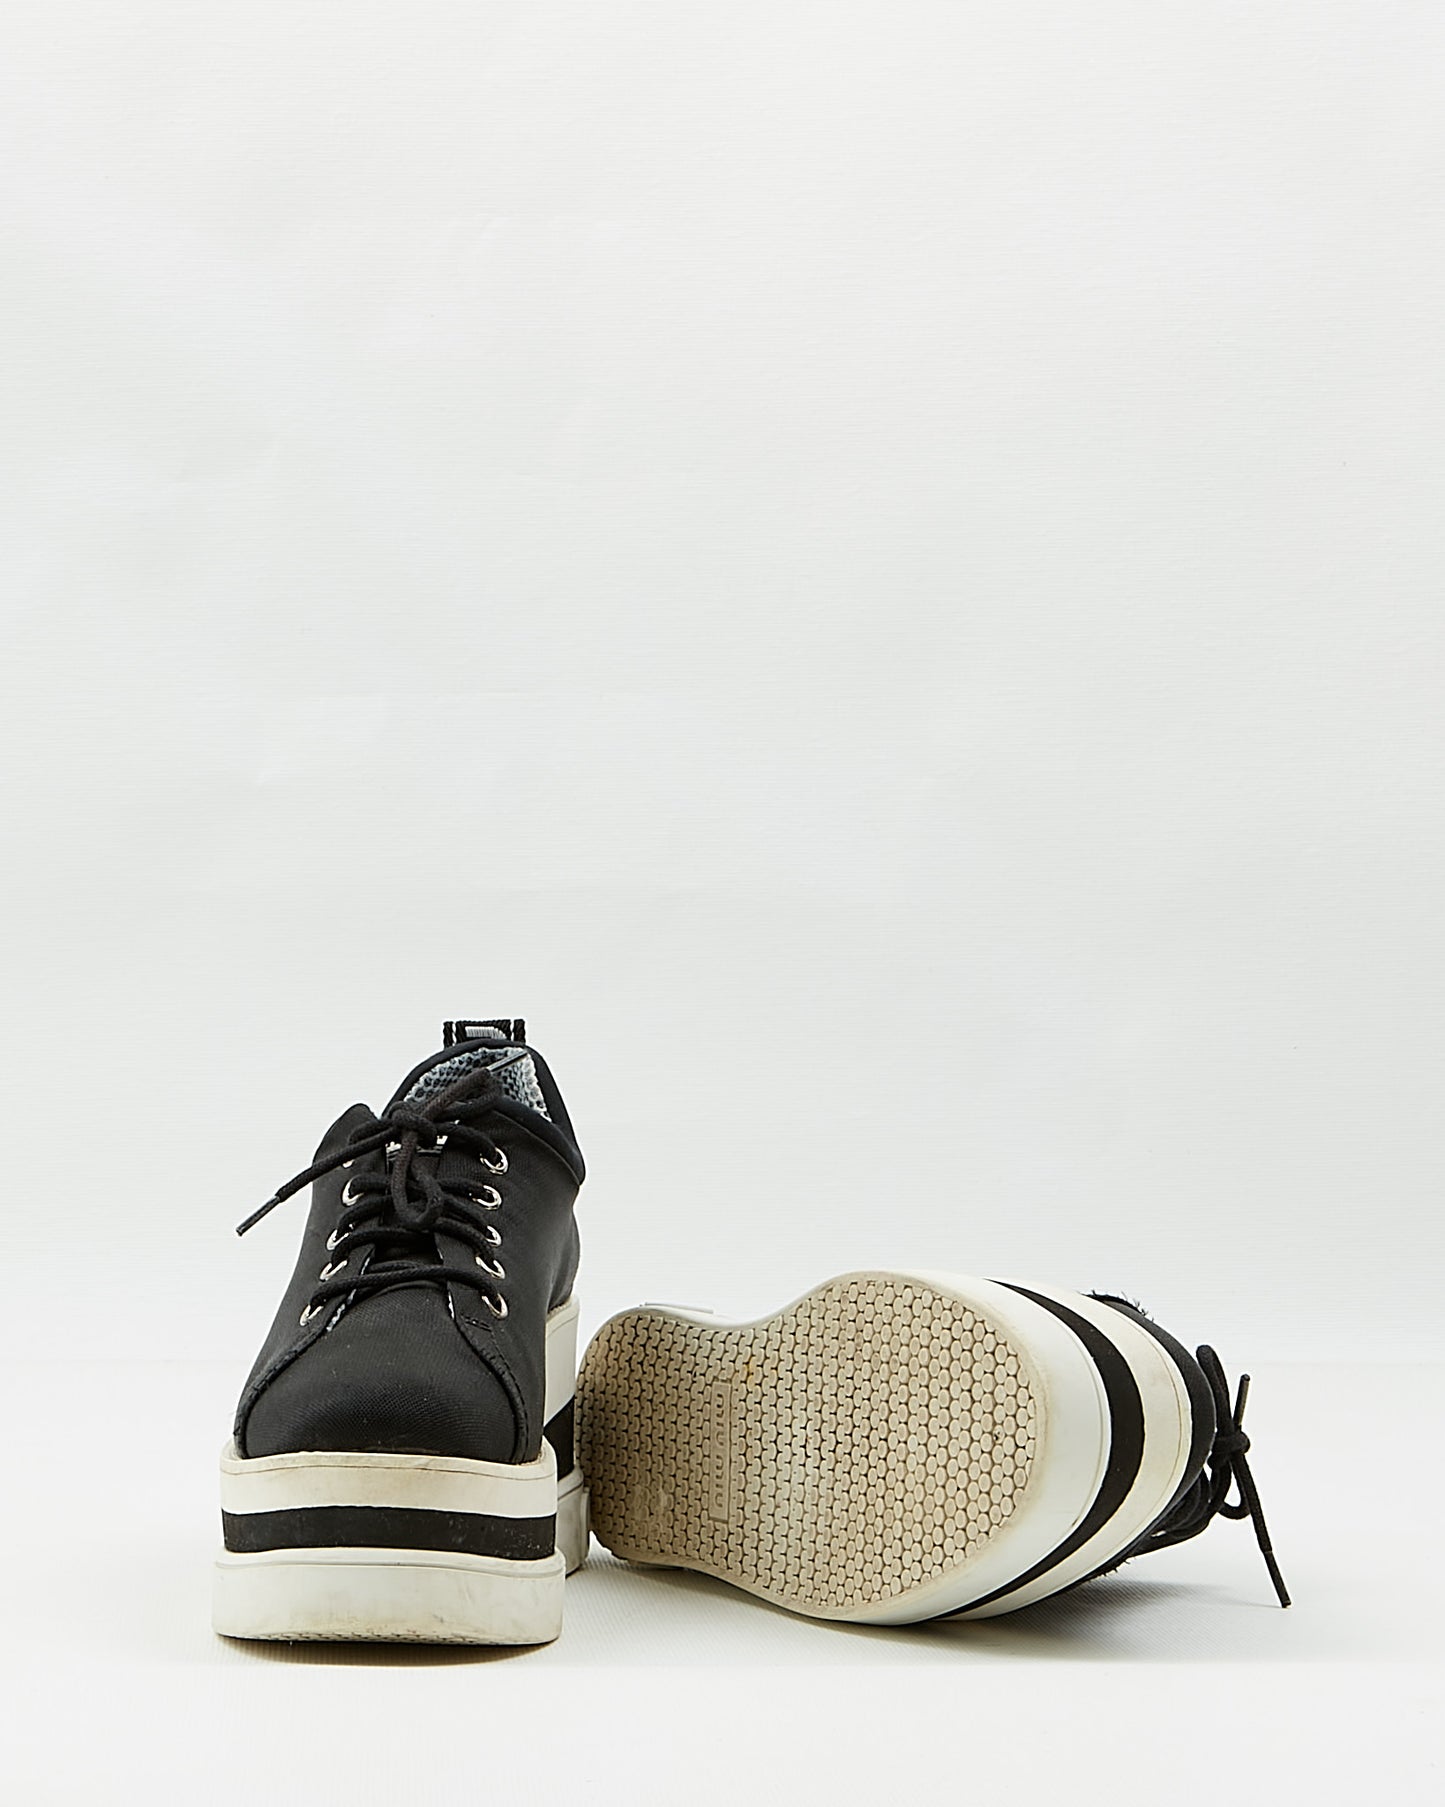 Miu Miu Black Fabric Lace Up Platform Sneakers - 38